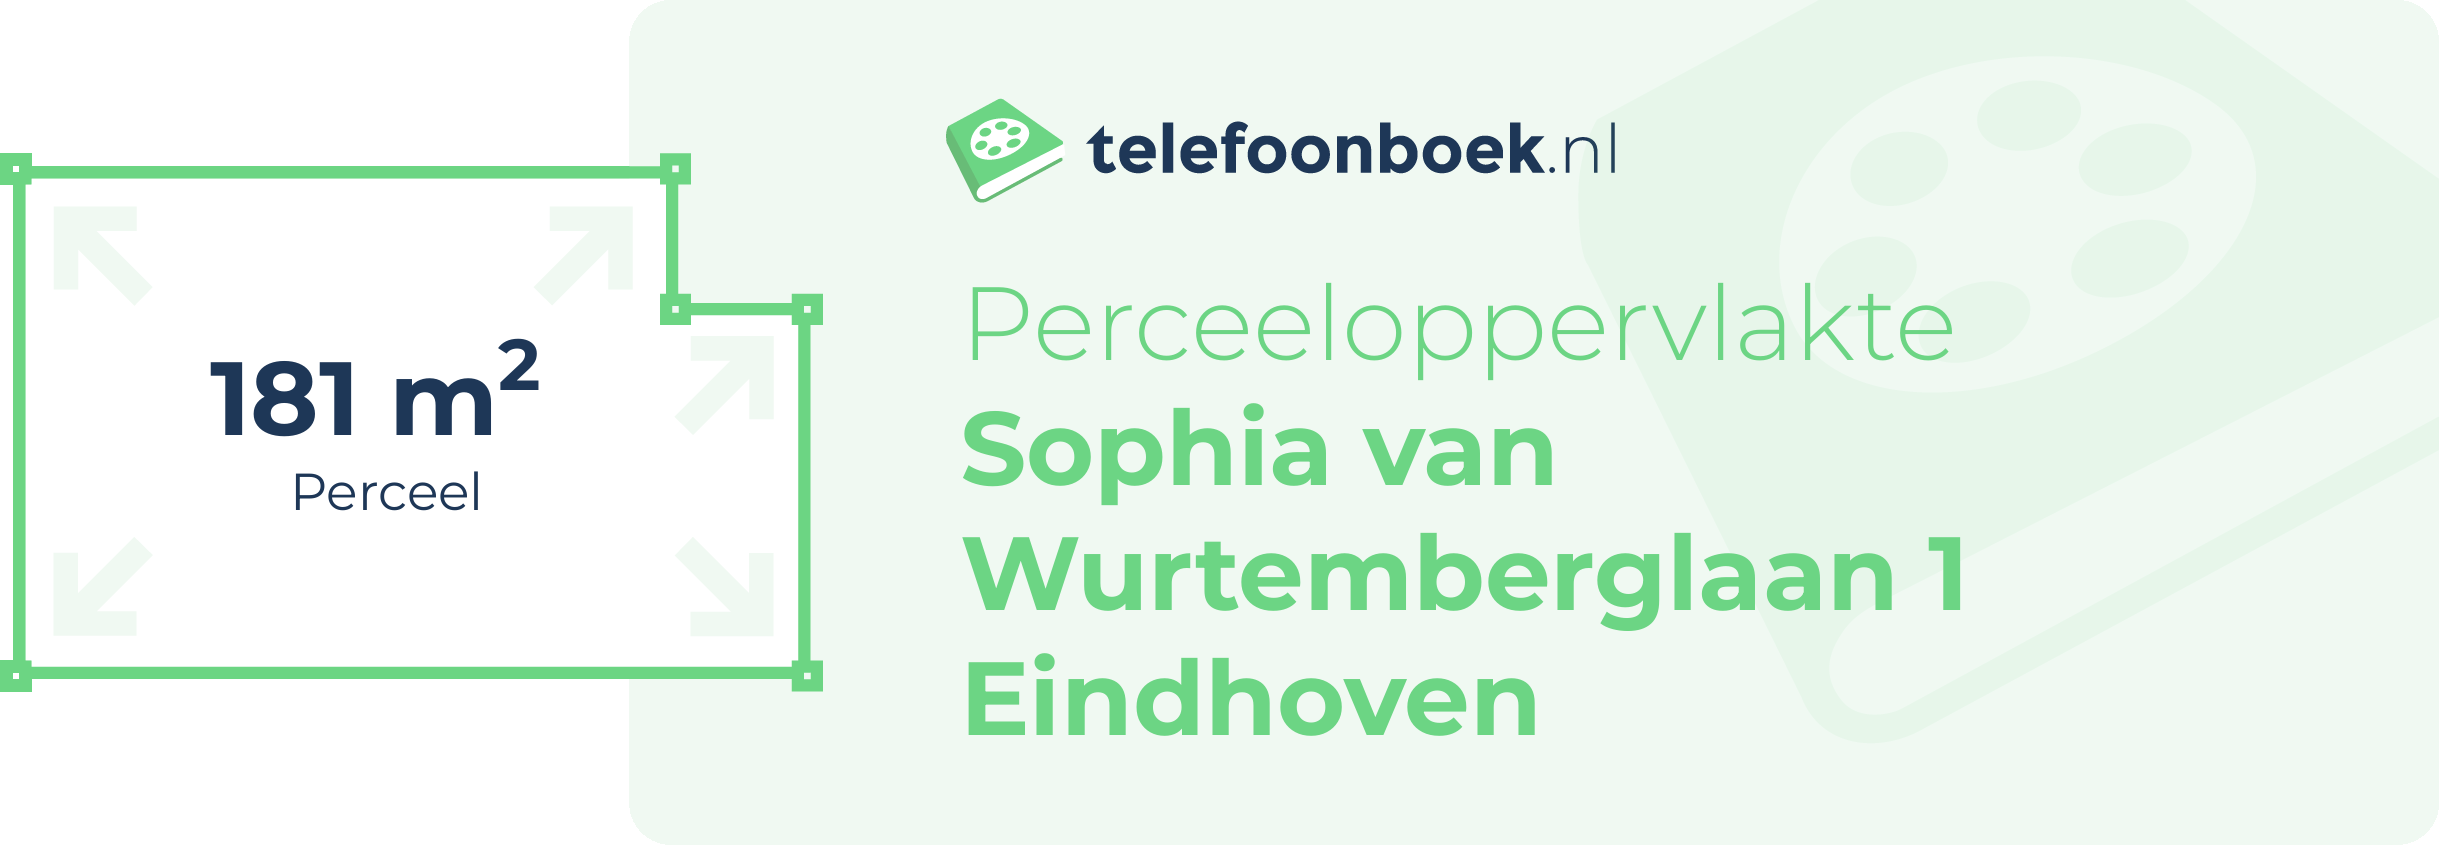 Perceeloppervlakte Sophia Van Wurtemberglaan 1 Eindhoven